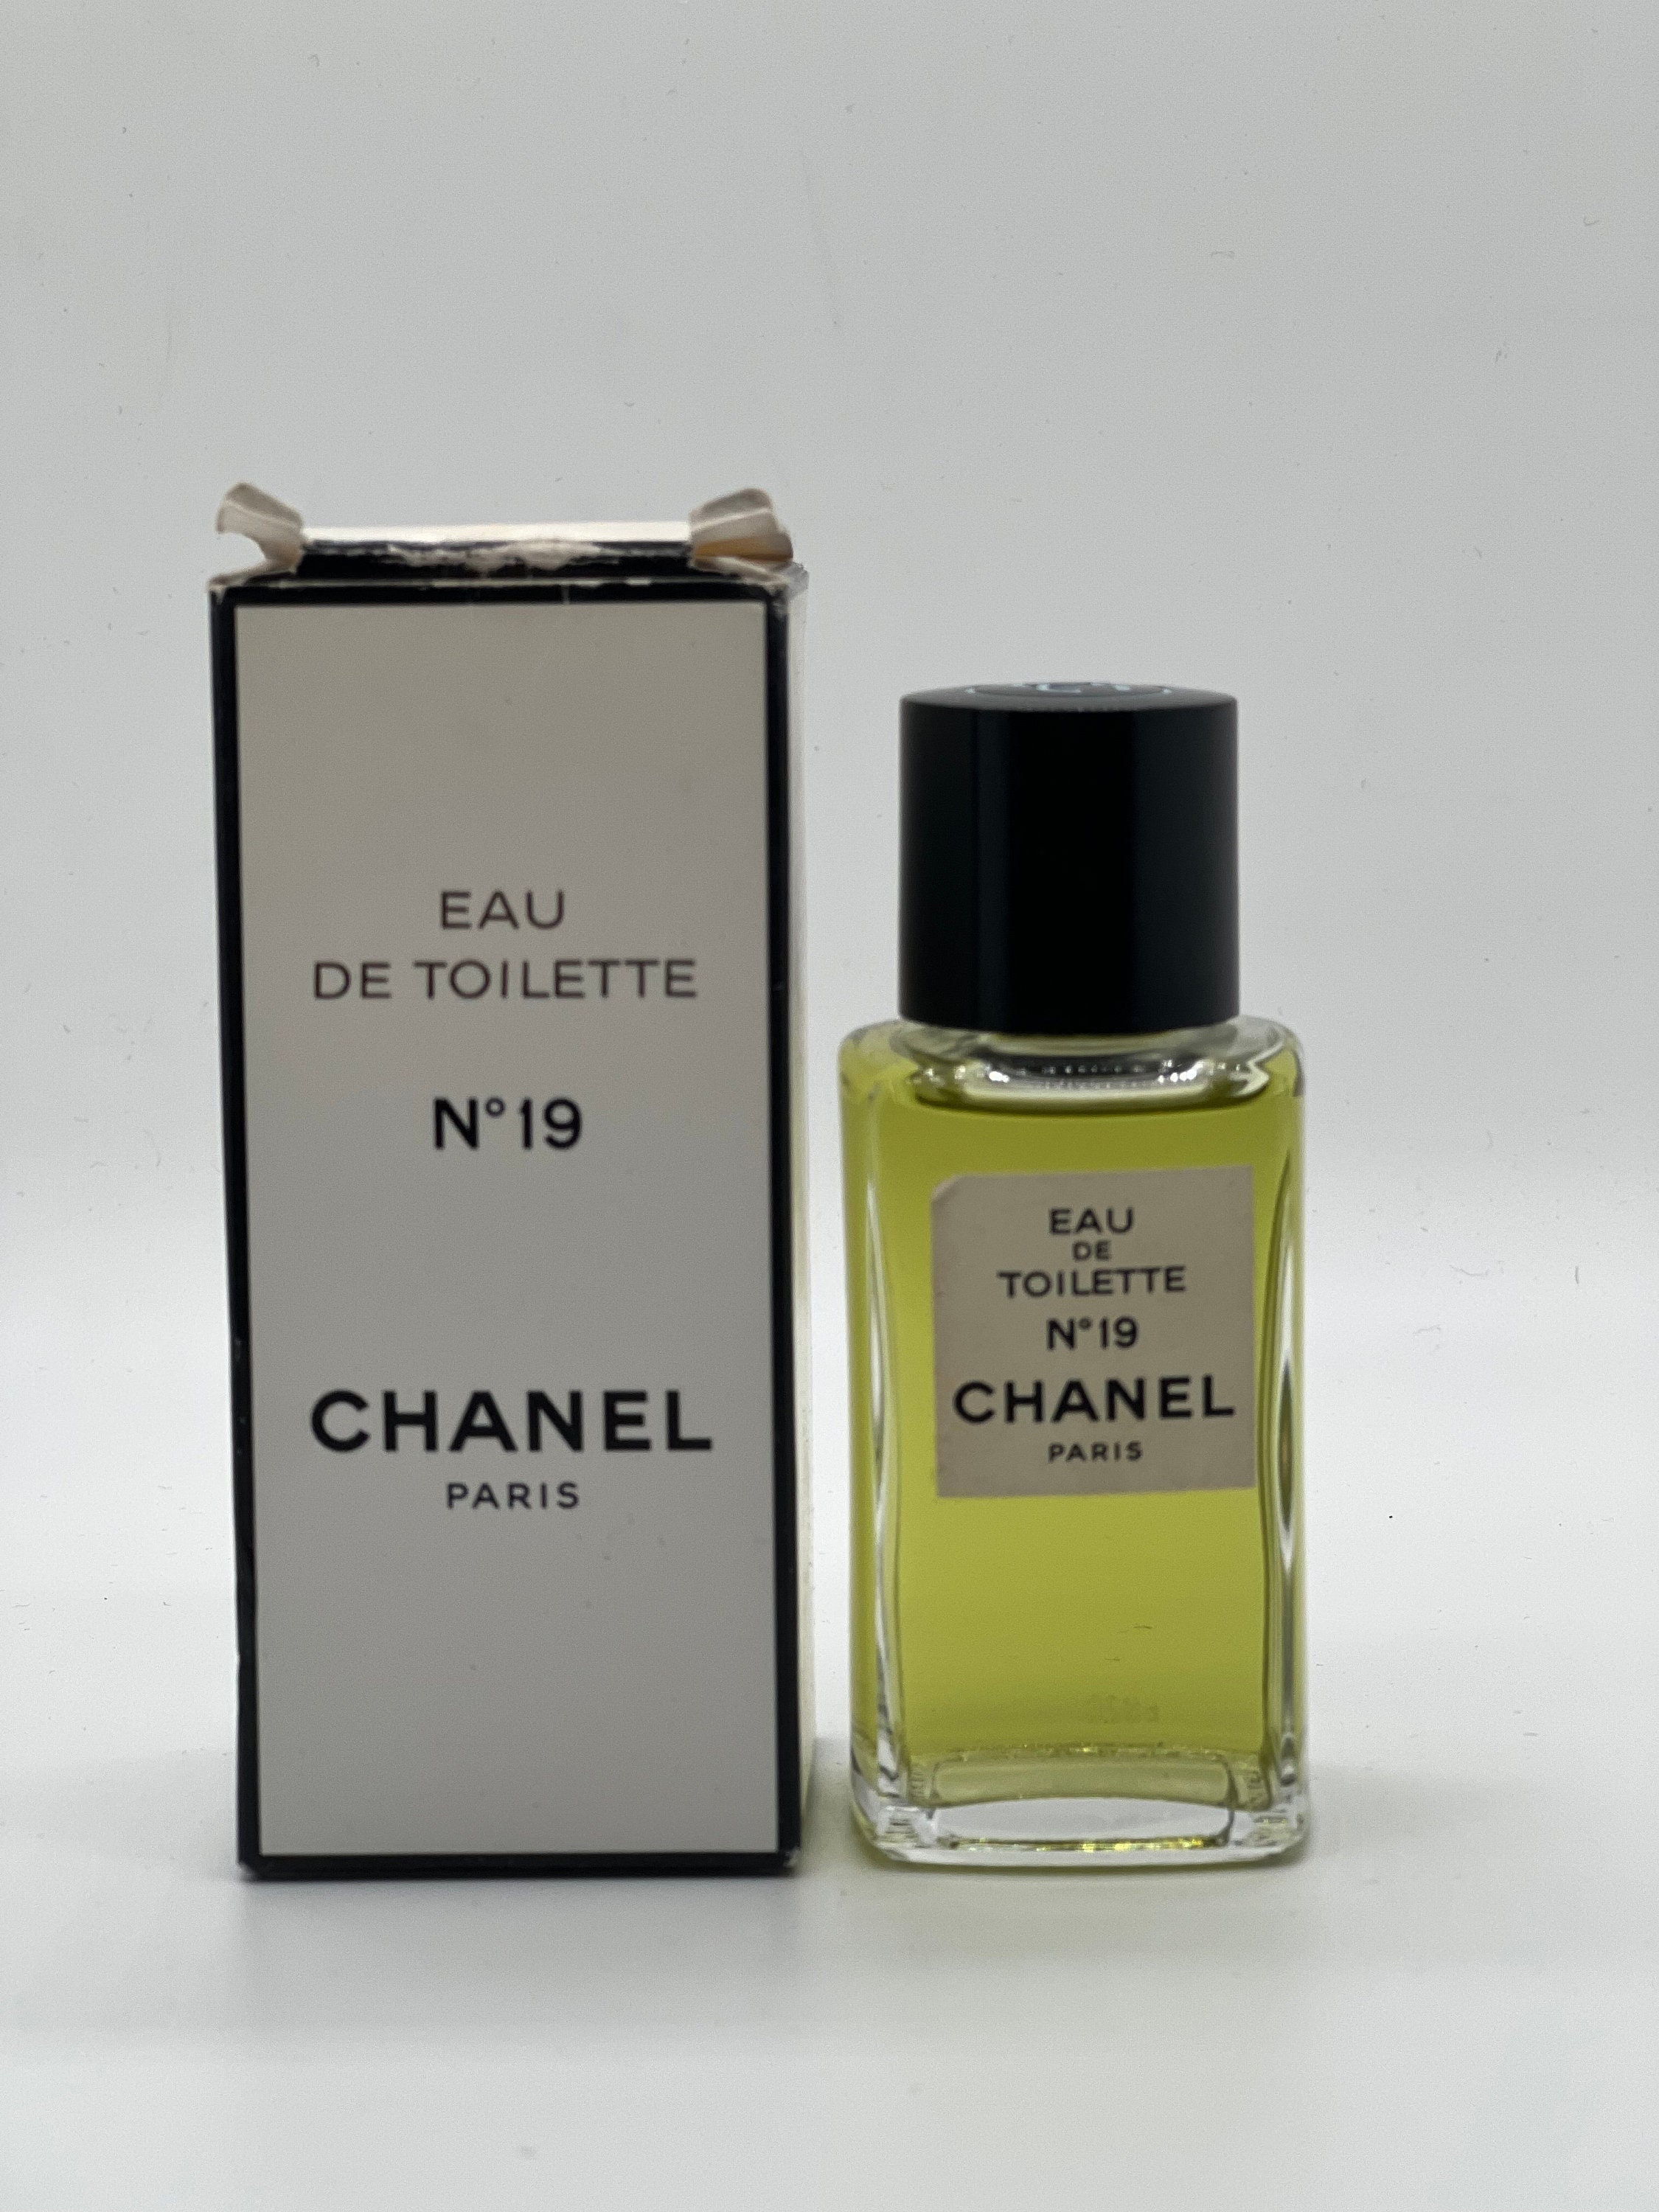 Chanel No 19 Vintage 